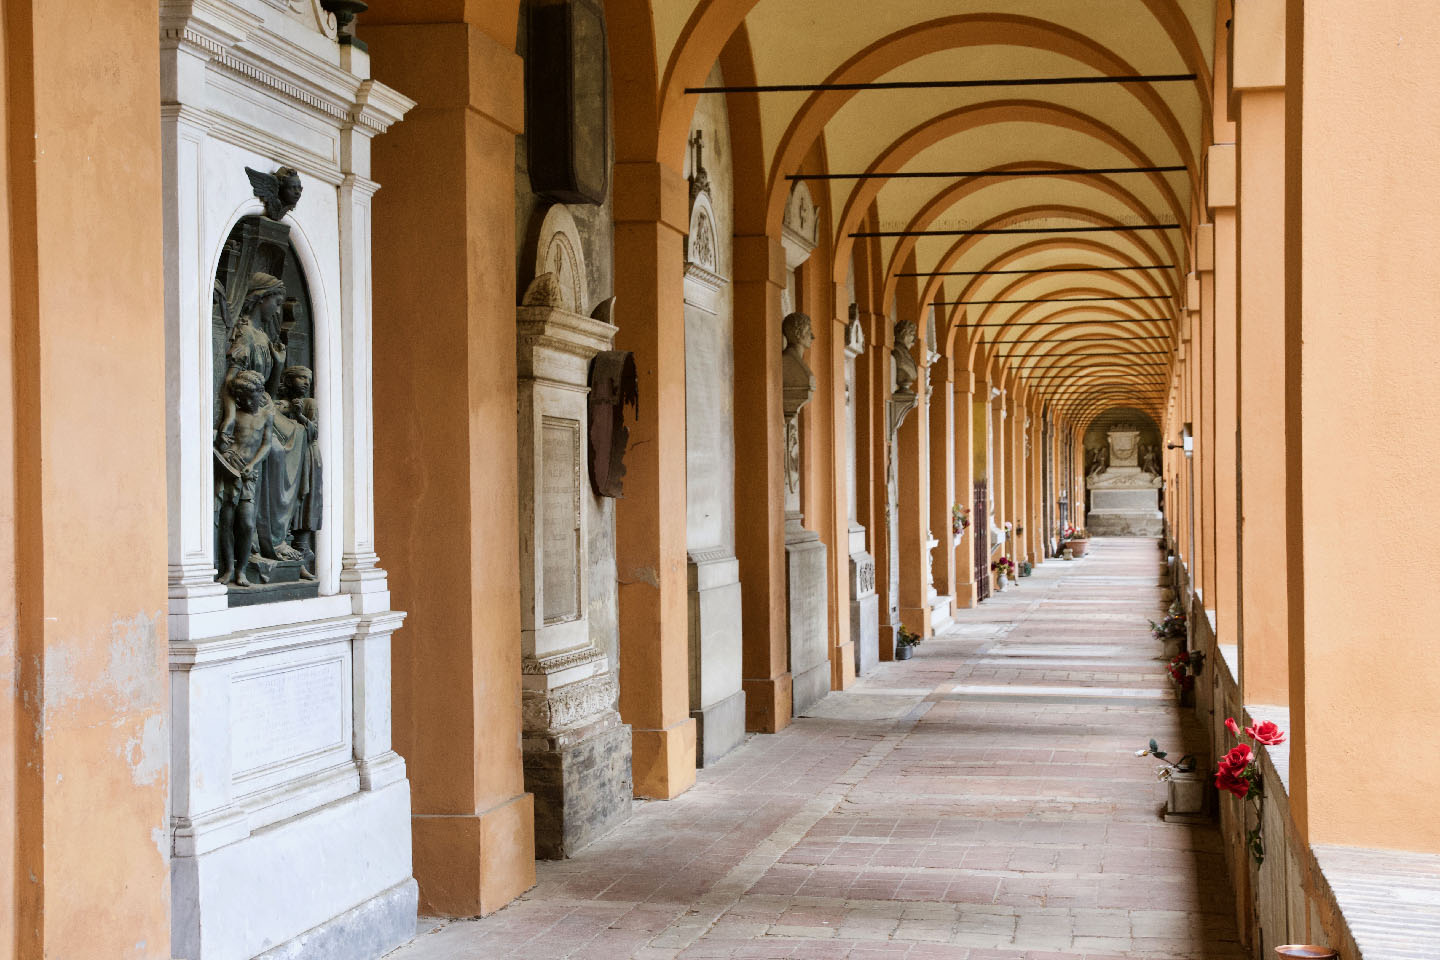 Il chiostro maggiore del Cimitero della Certosa di Bologna. Si vede una serie di archi di portico, e monumenti sepolcrali sulla sinistra.